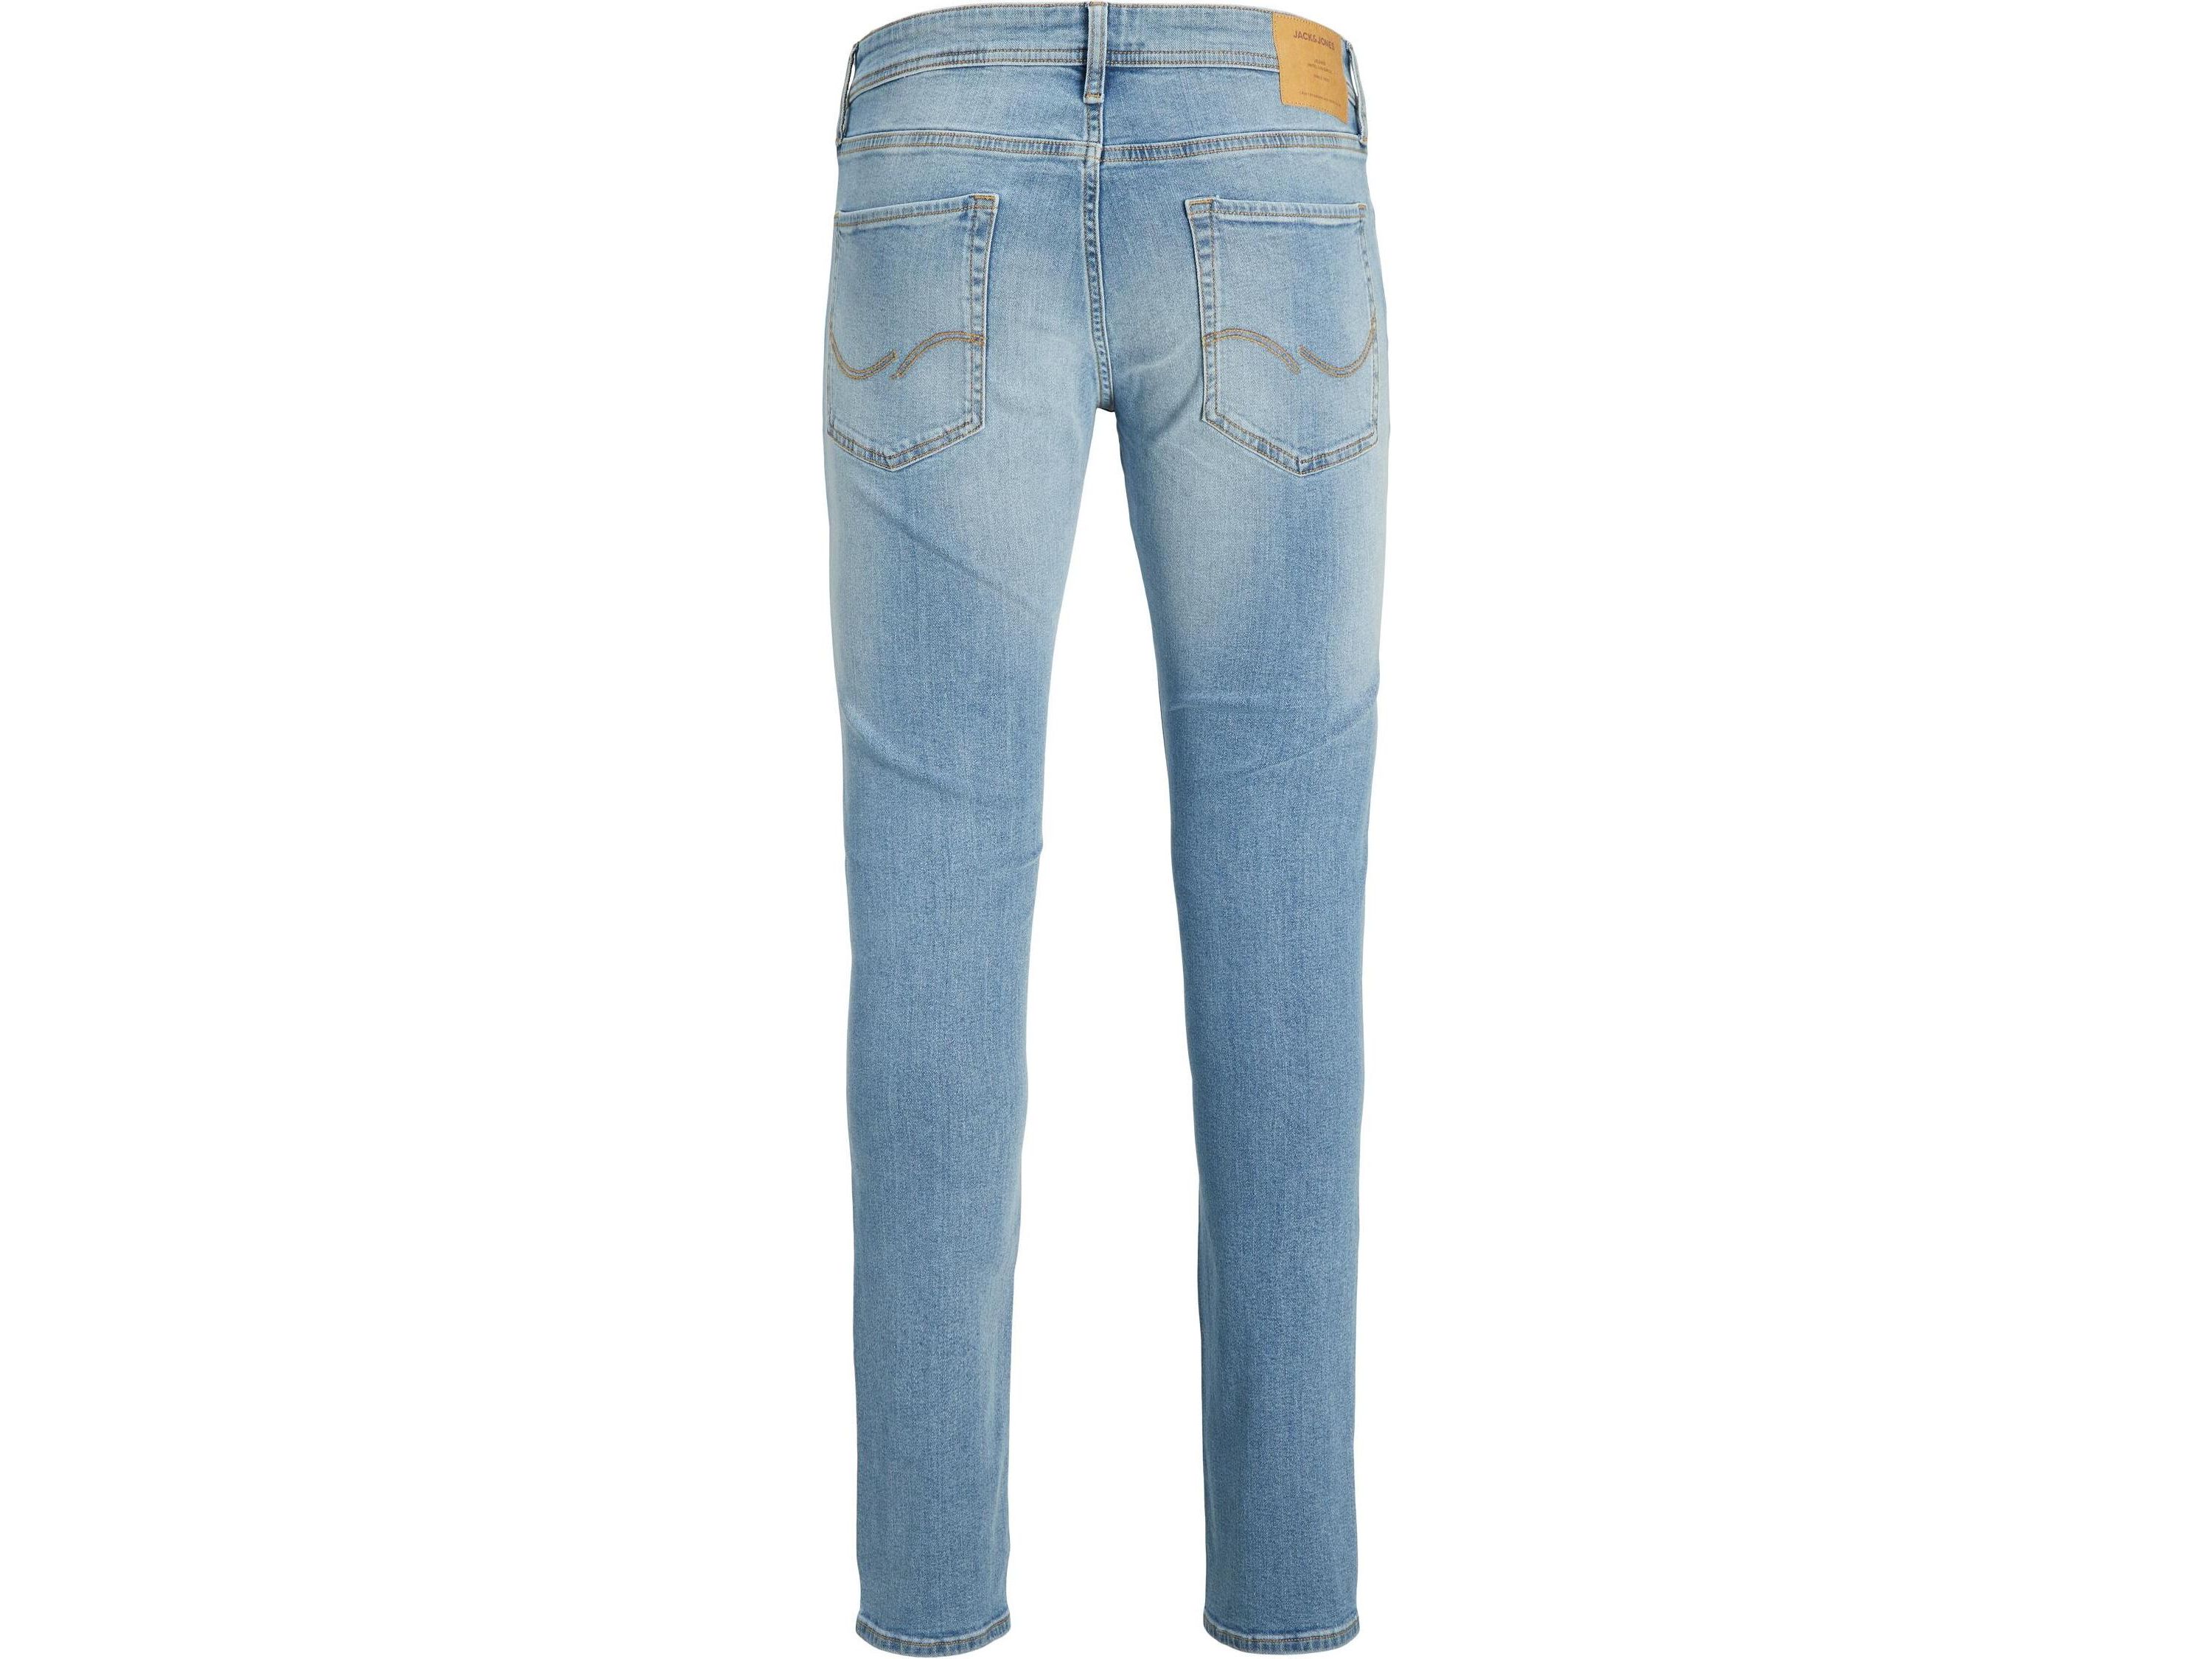 jackjones-glenn-original-jeans